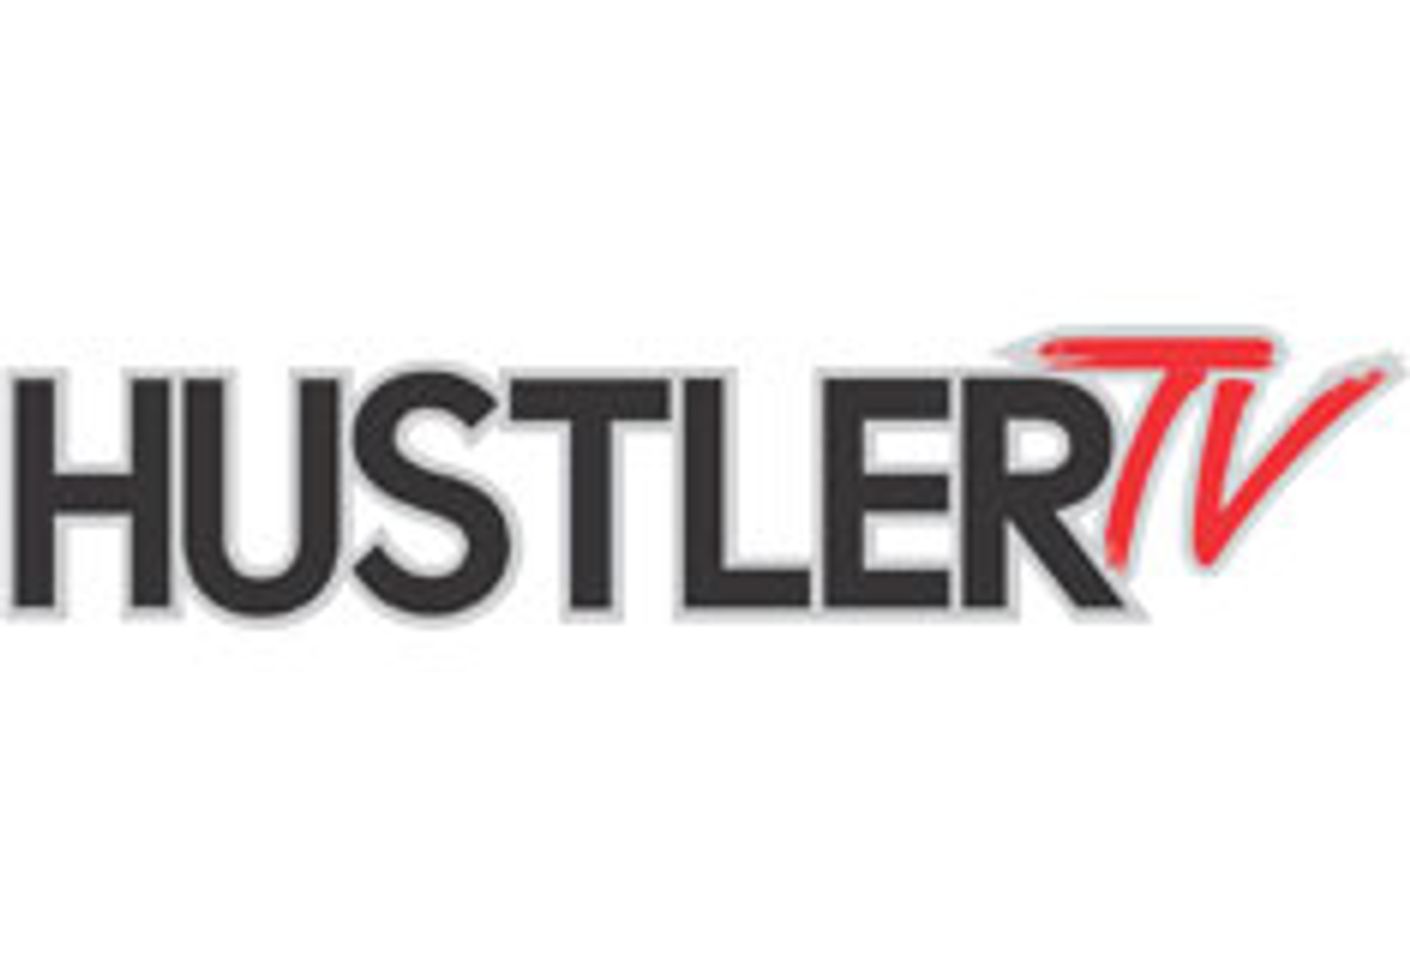 Hustler TV, Gospel Channel Neighbors at NCTA Show